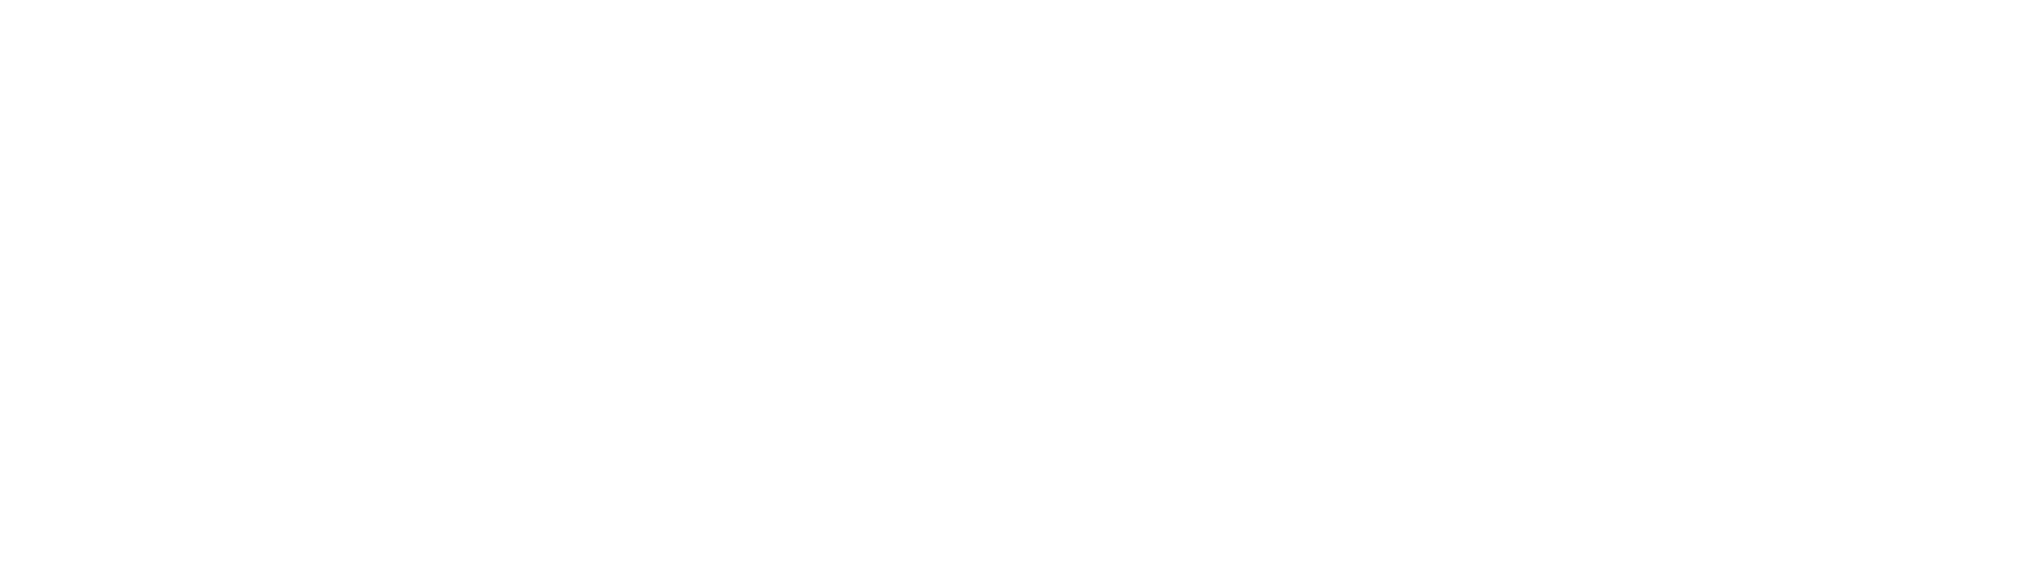 MenaRewards_Logo_EN_White.png